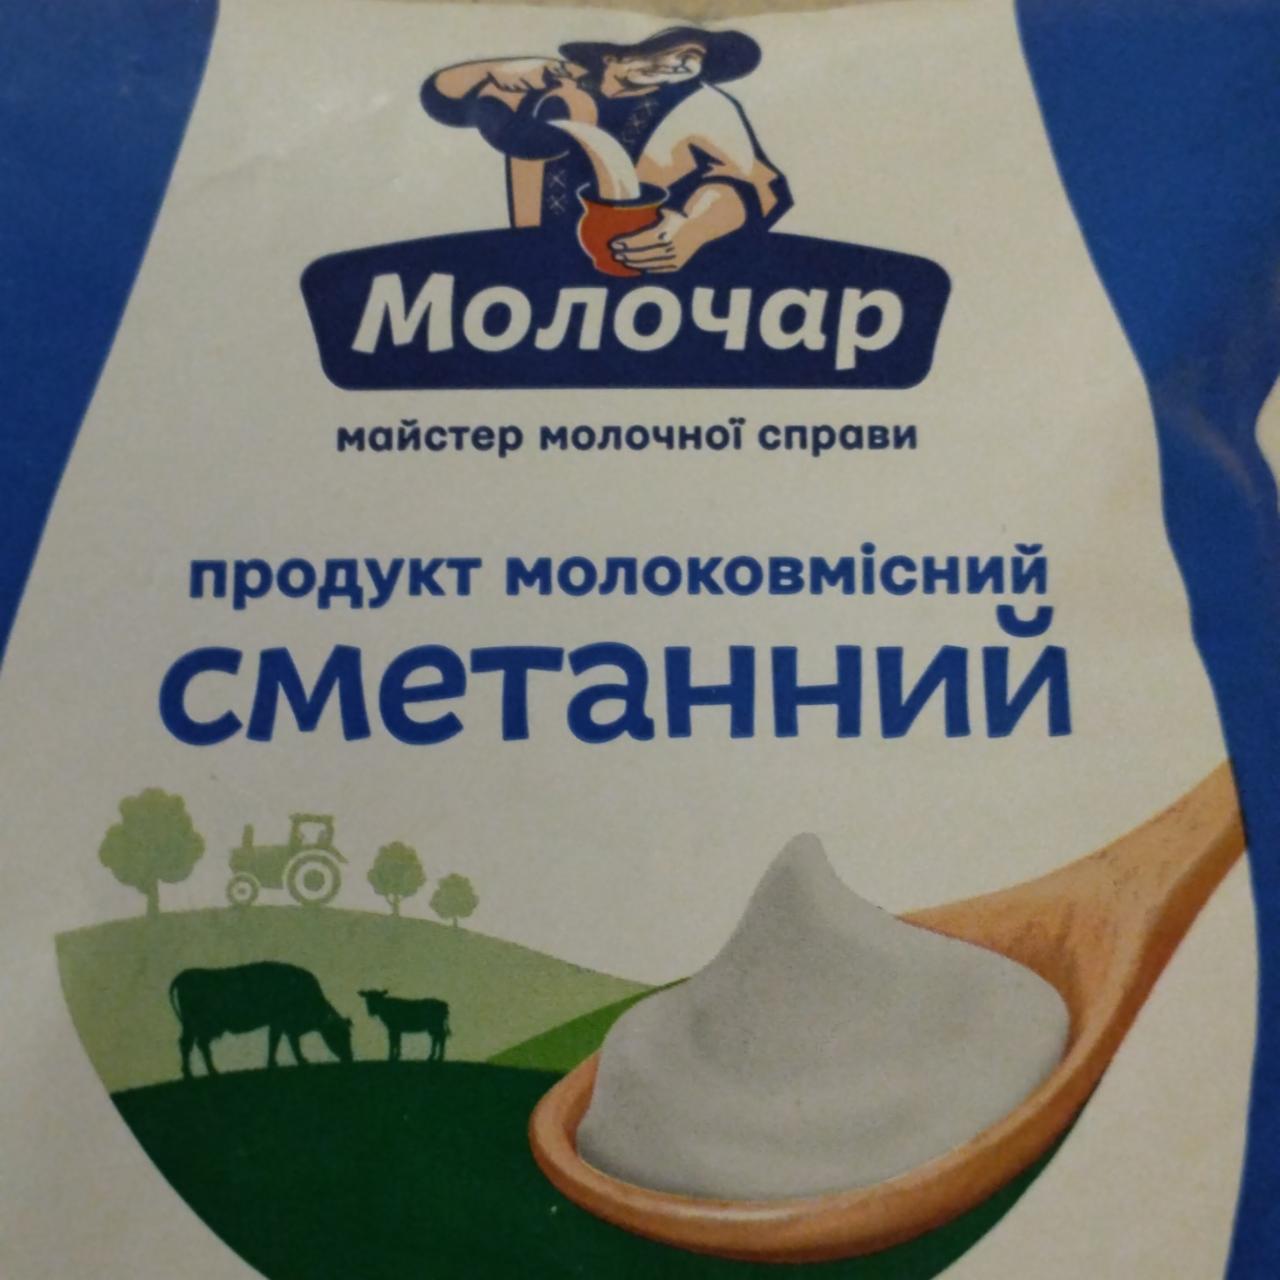 Фото - Продукт молоковмісний сметанний 20% Молочар